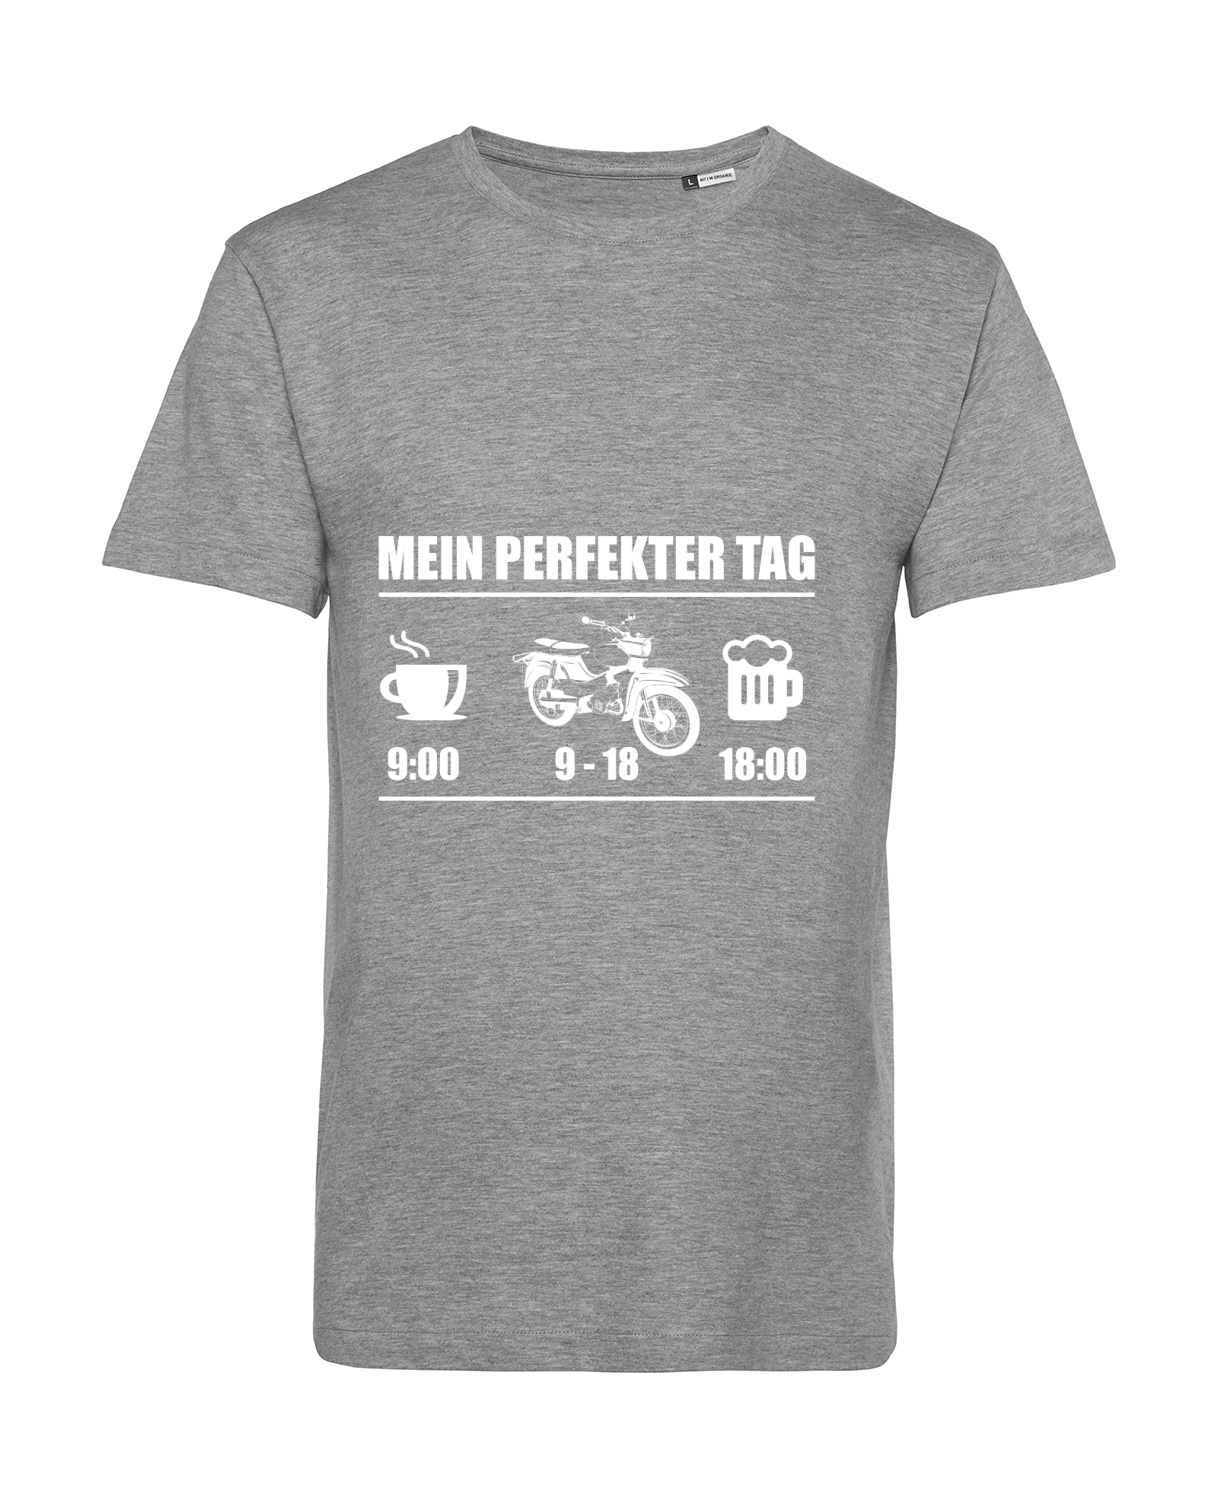 Nachhaltiges T-Shirt Herren 2Takter - Mein perfekter Tag Star